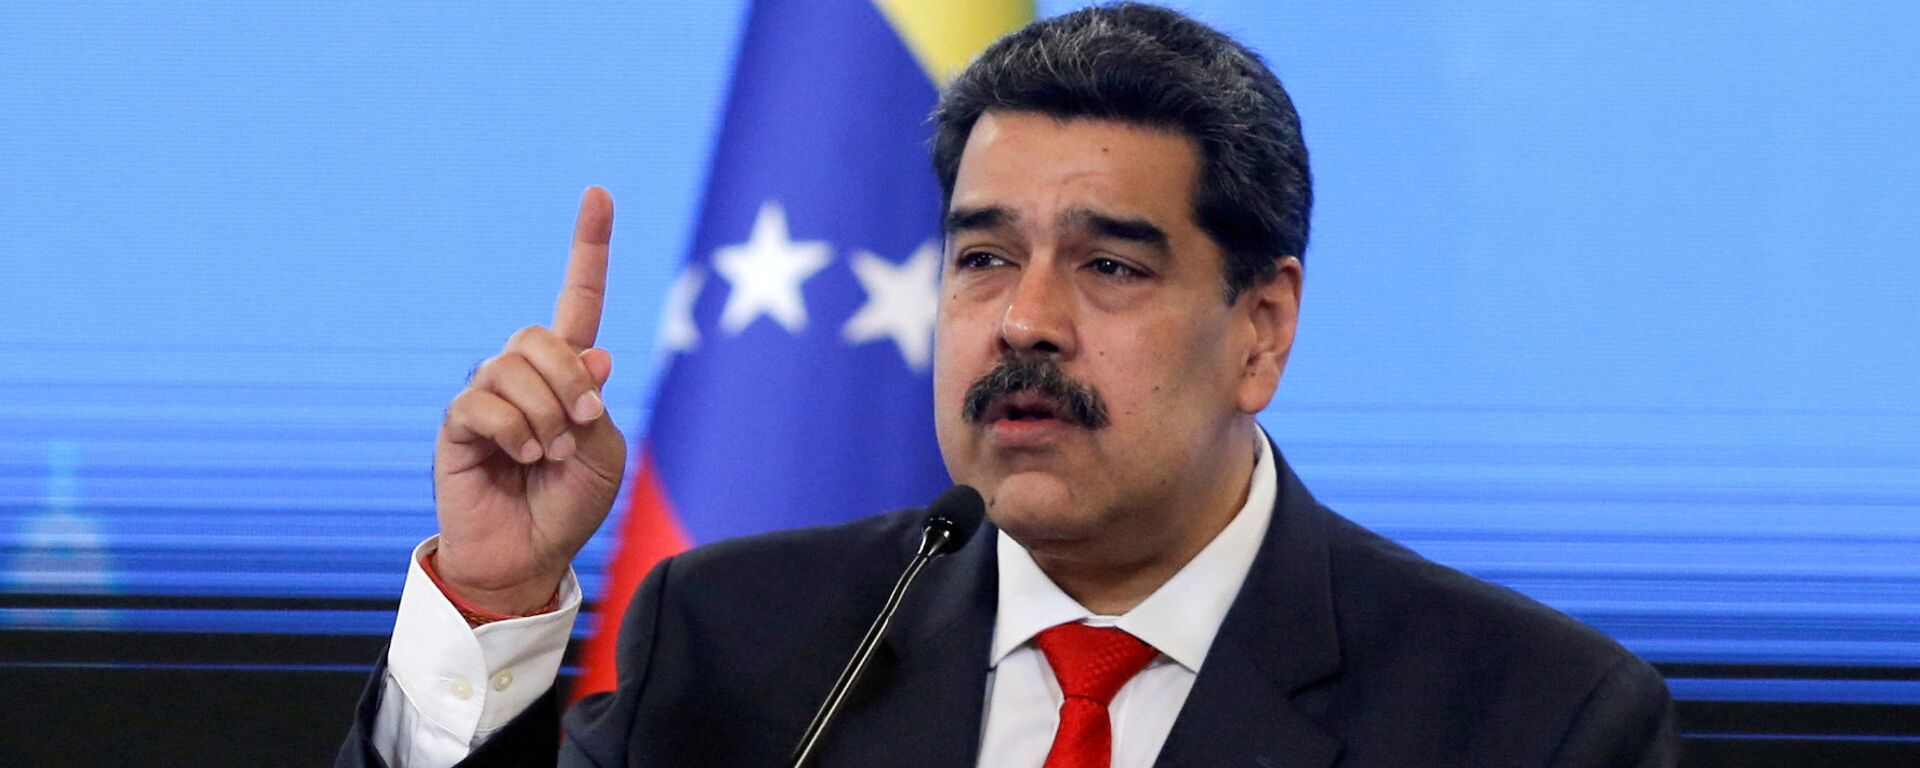 Nicolás Maduro, presidente de Venezuela - Sputnik Mundo, 1920, 04.03.2021